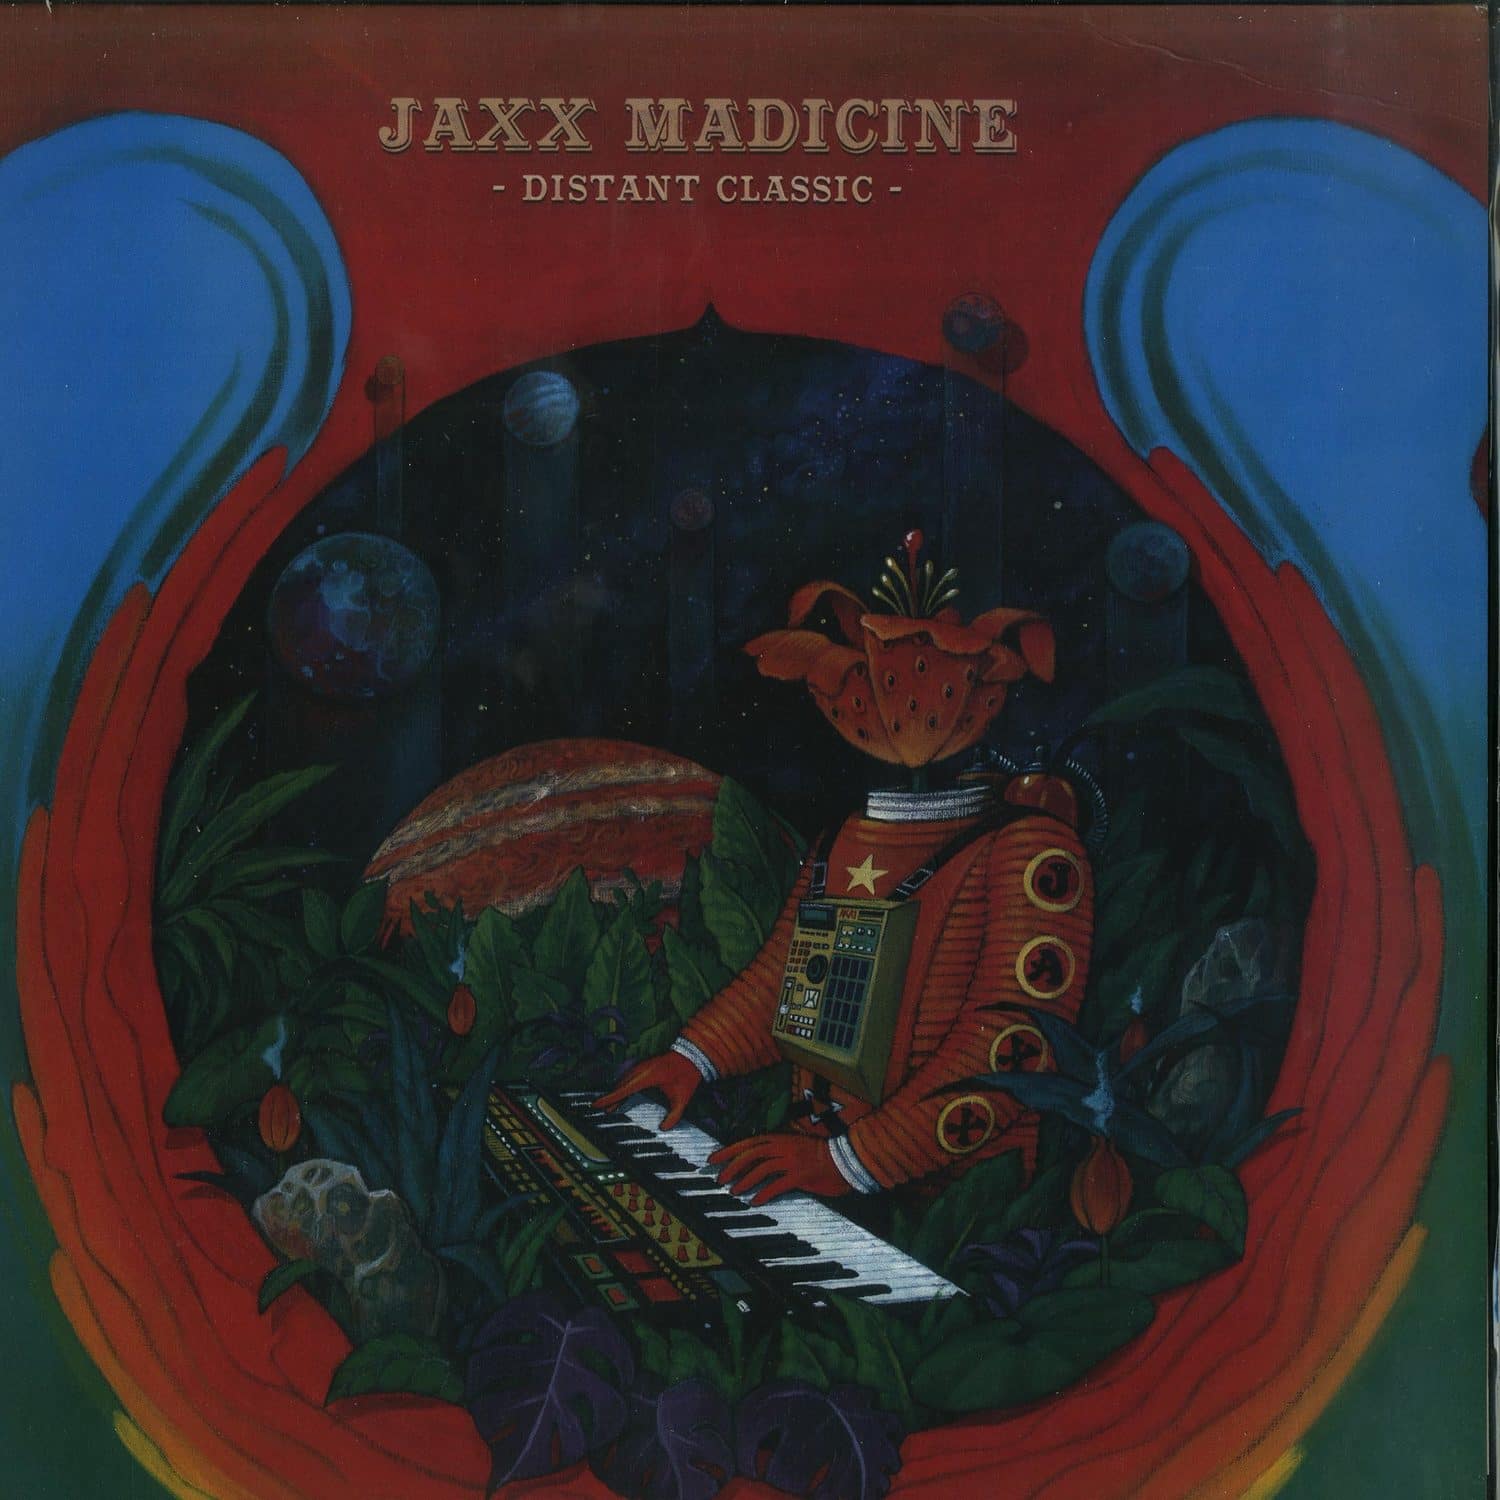 Jaxx Madicine - DISTANT CLASSIC 